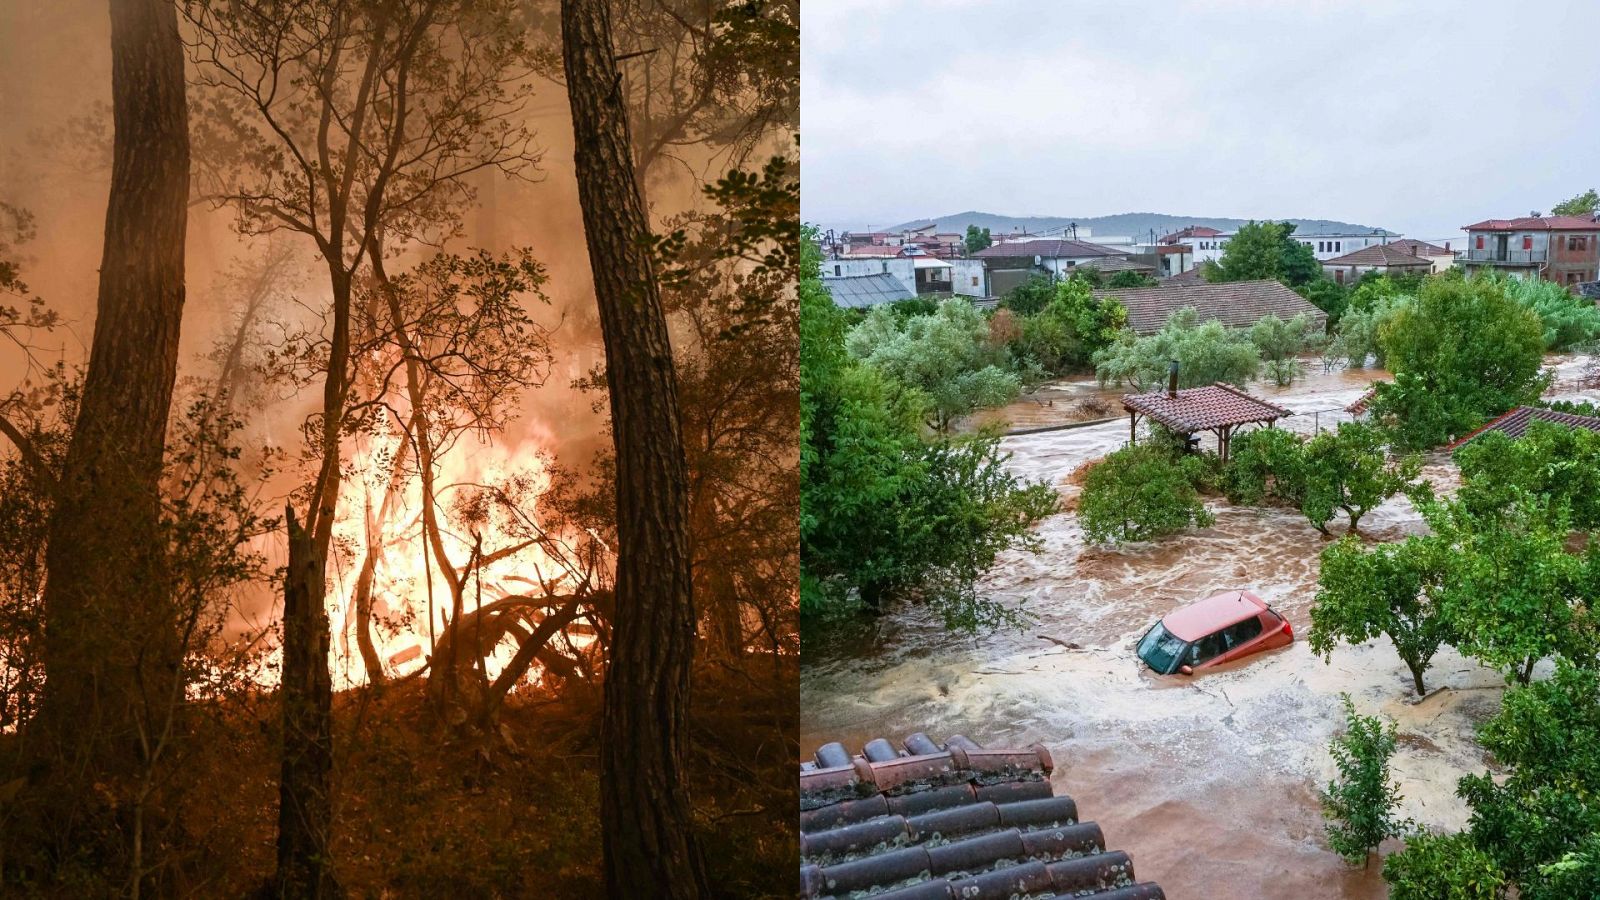 Grecia, golpeada por los incendios este verano, sufre ahora inundaciones tras el paso de la tormenta Daniel